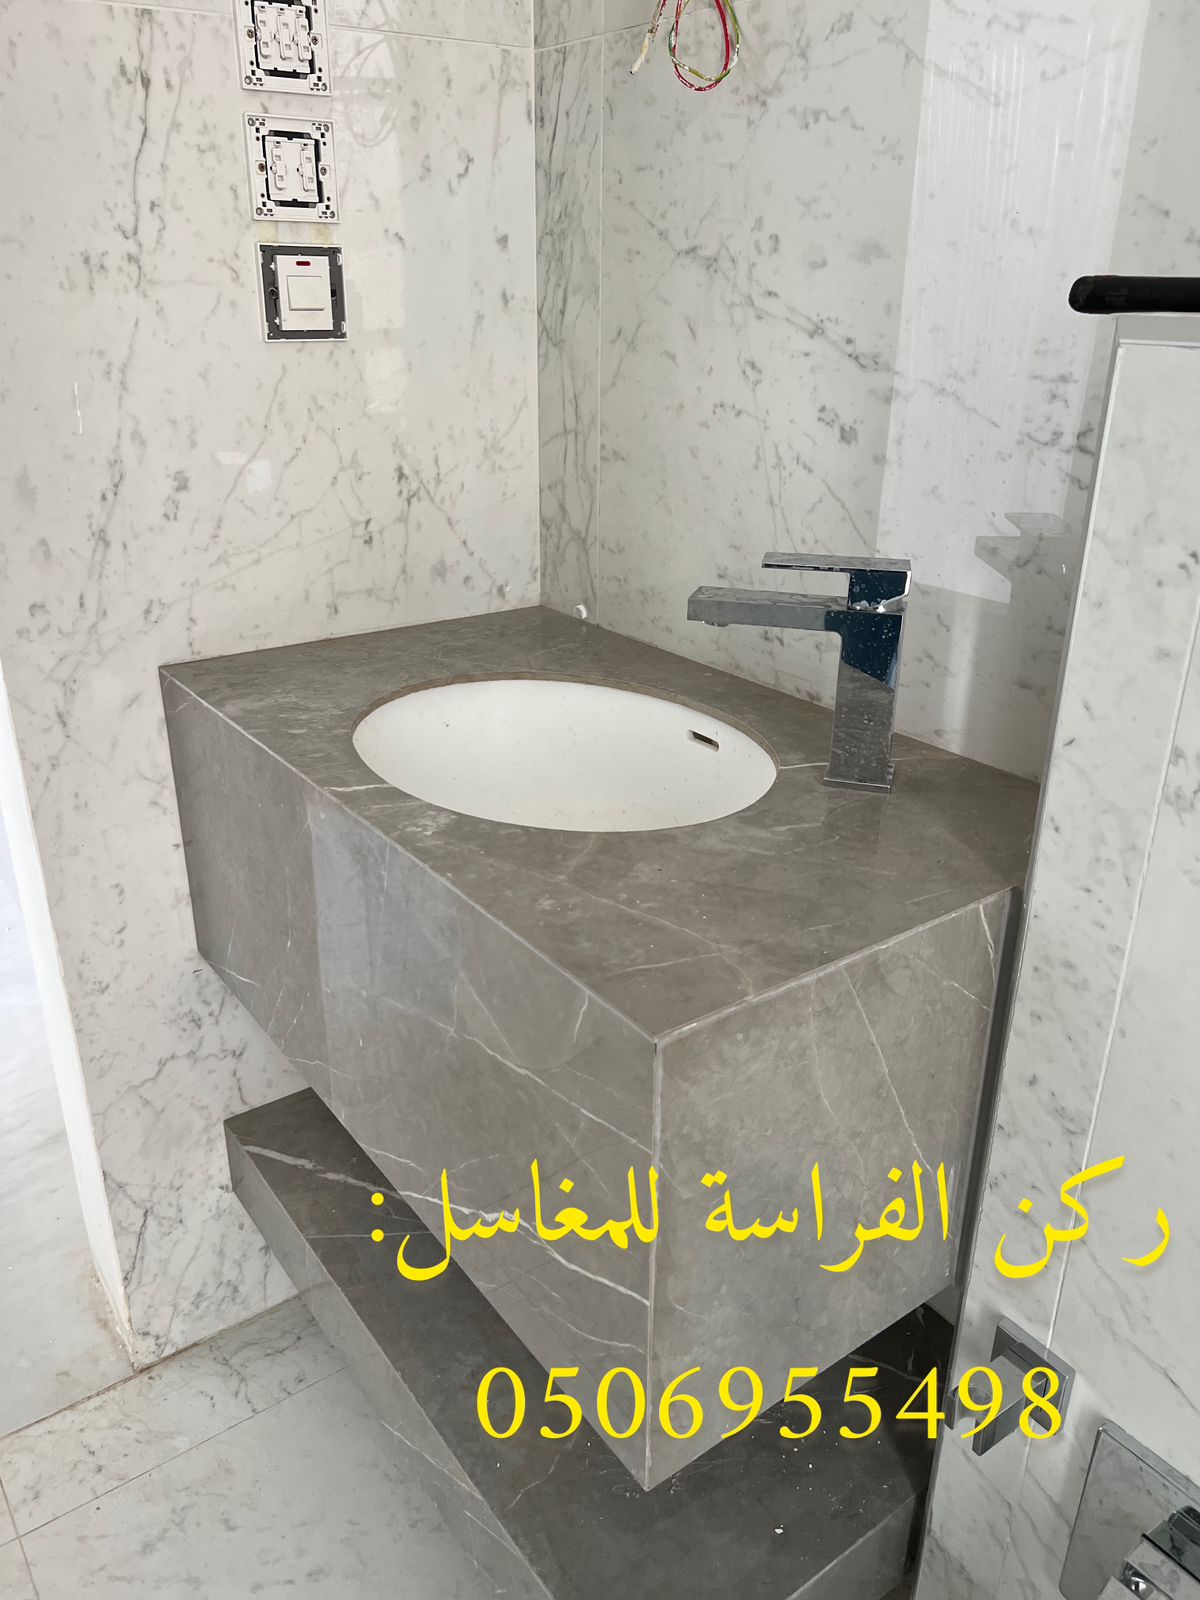 تفصيل مغاسل تصاميم مغاسل مغاسل مودرن مغاسل الرياض